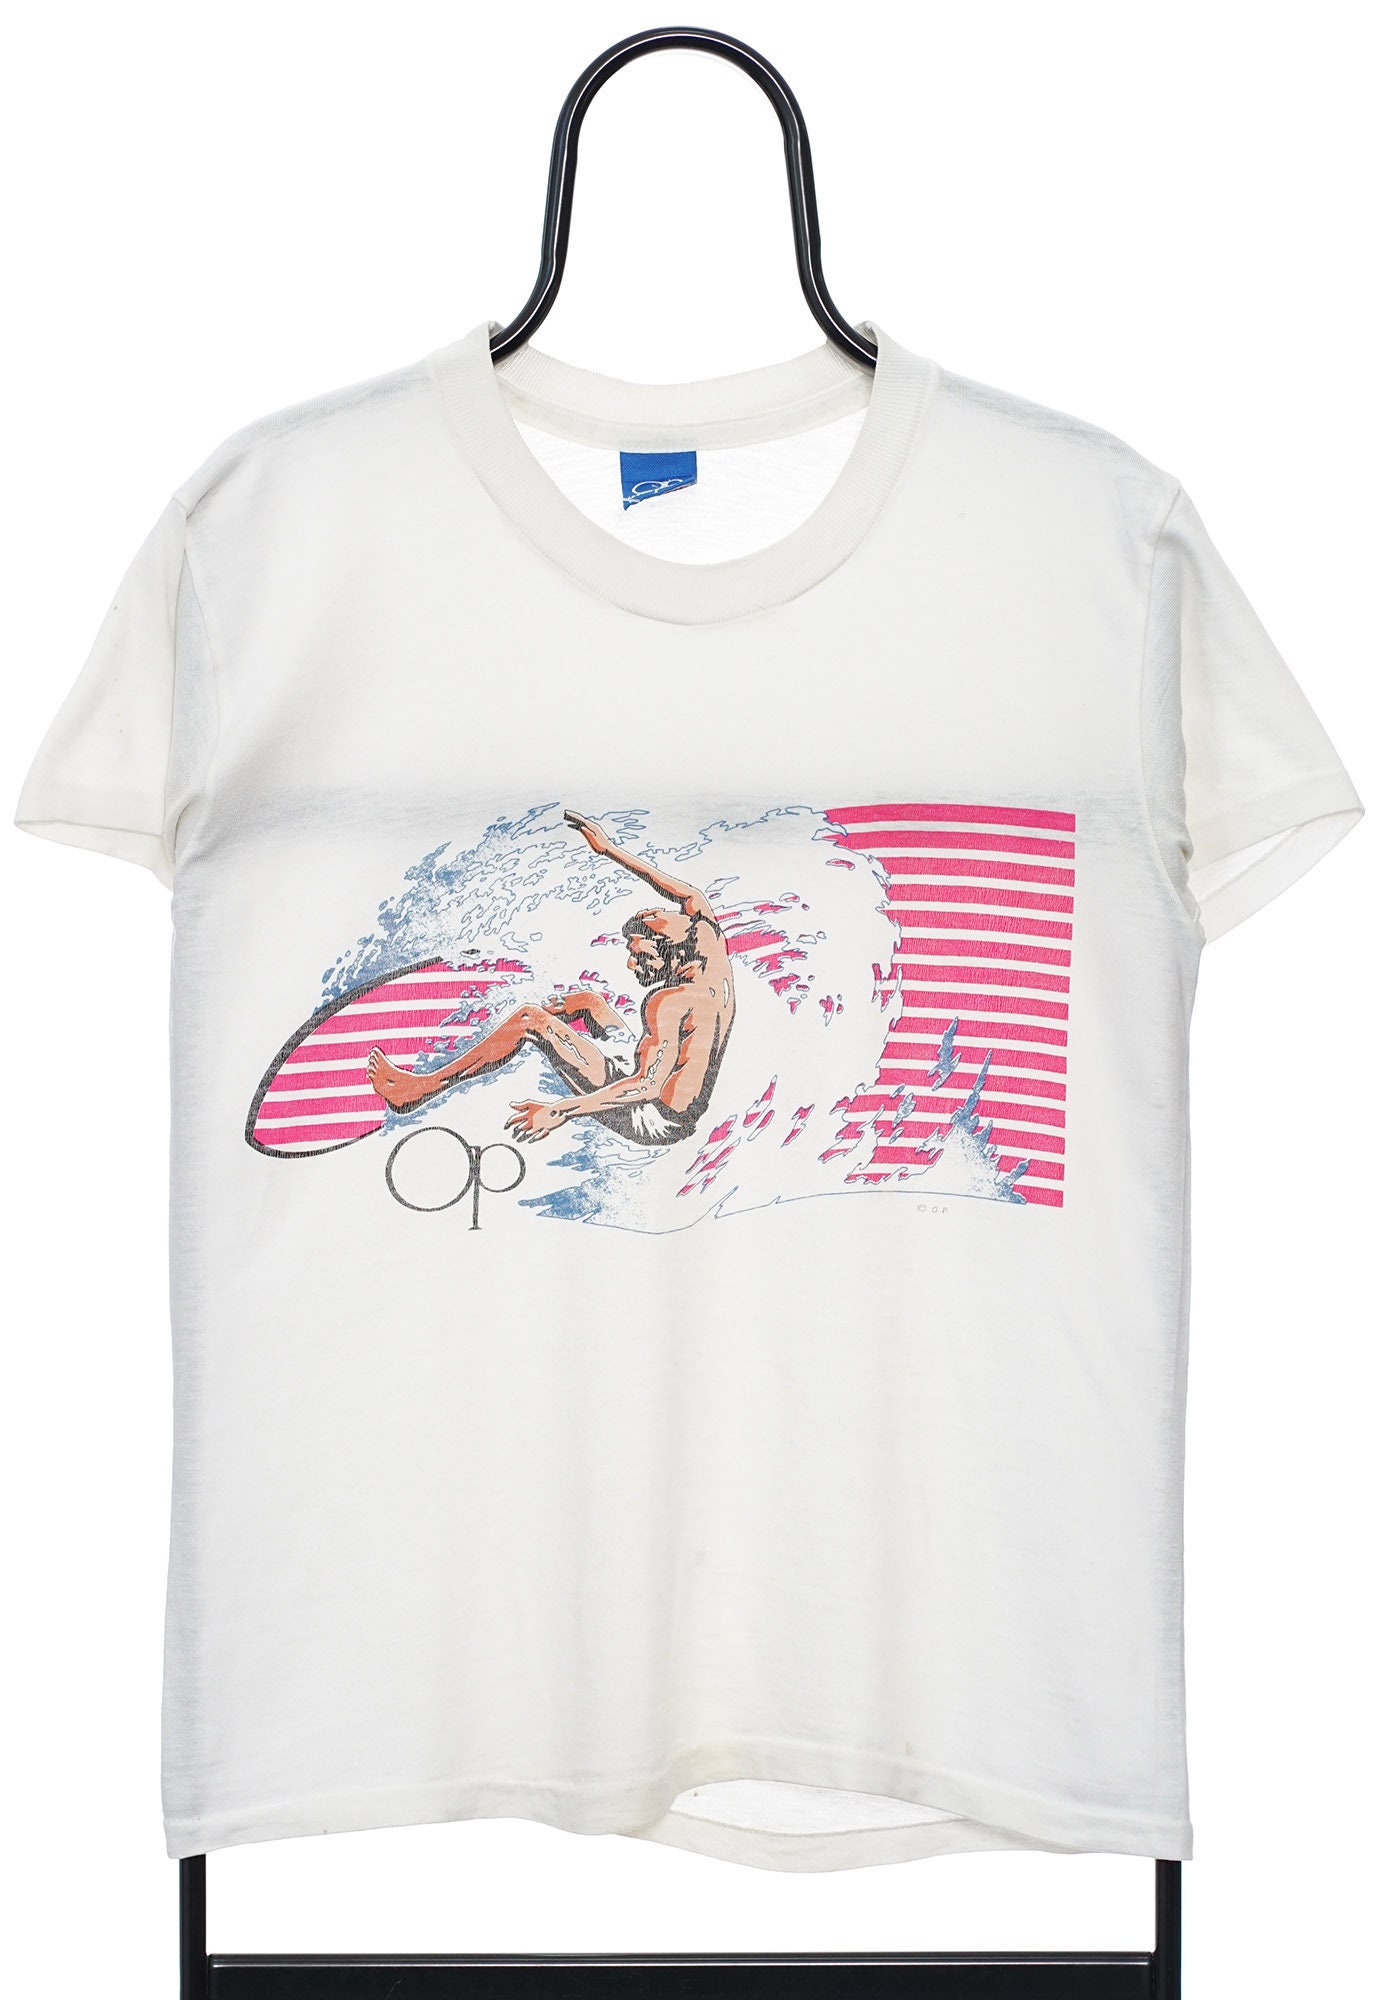 Vêtements Vêtements enfant unisexe Hauts et t-shirts T-shirts T-shirts graphiques Youth Ocean Pacific 1986 Surfs Up T-Shirt vintage taille 6 